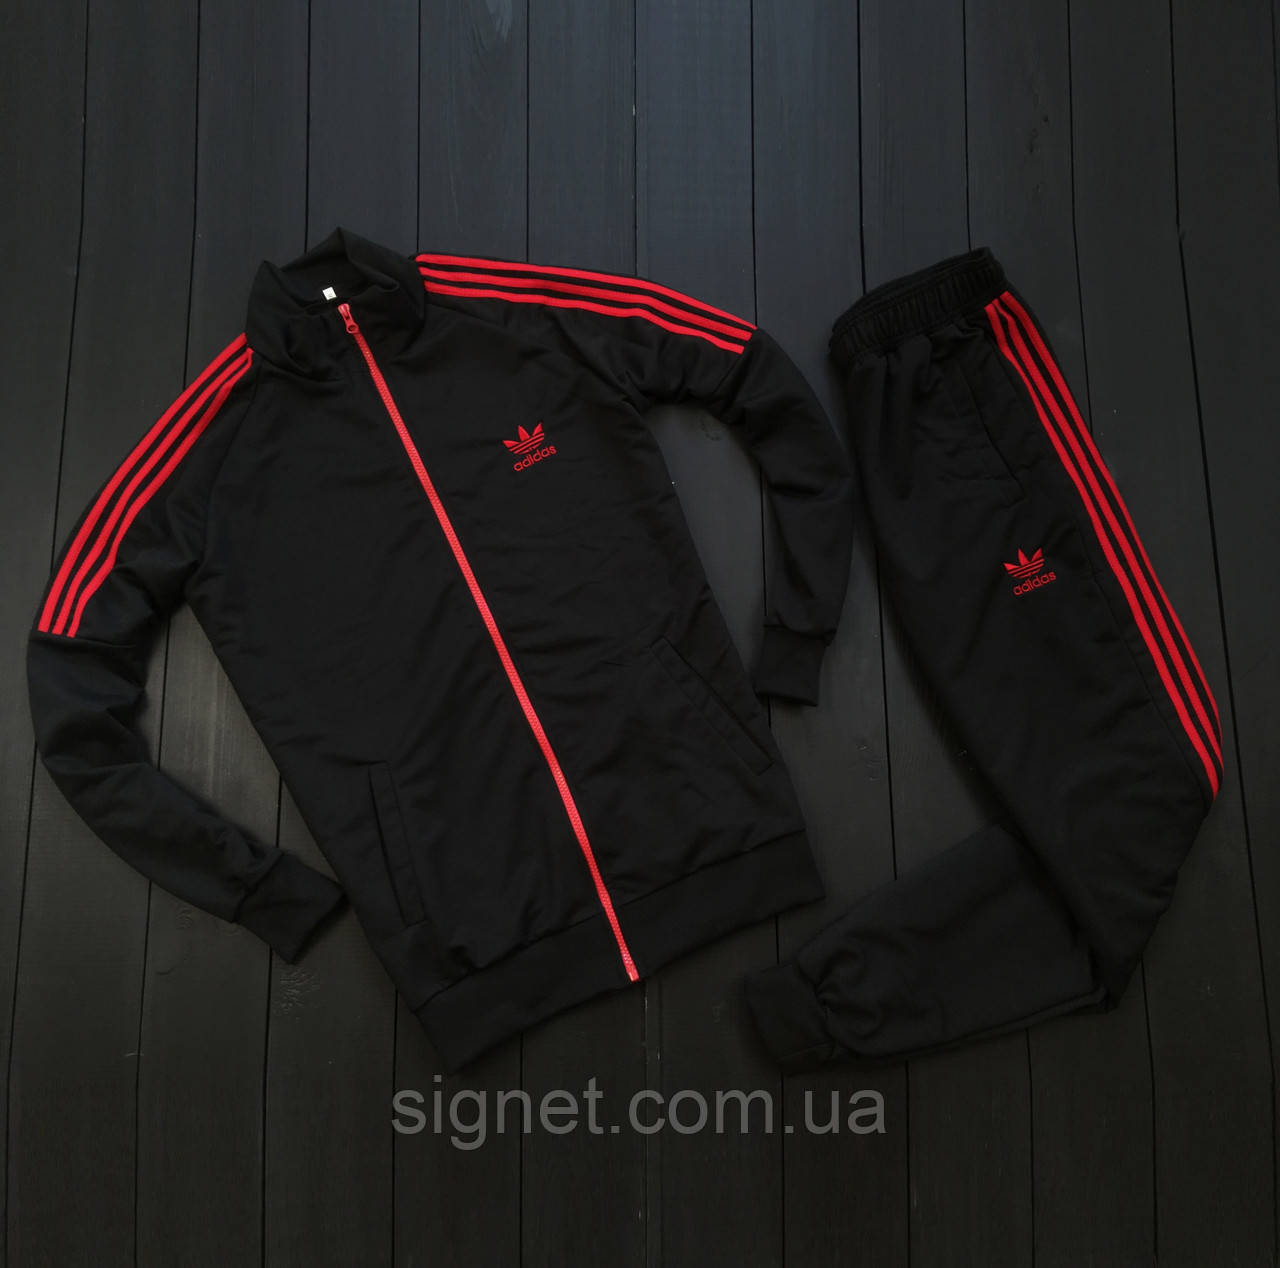 Спортивний костюм Adidas чоловічий. Чорний спортивний костюм Adidas Адідас,  ціна 798 грн - Prom.ua (ID#1447891786)